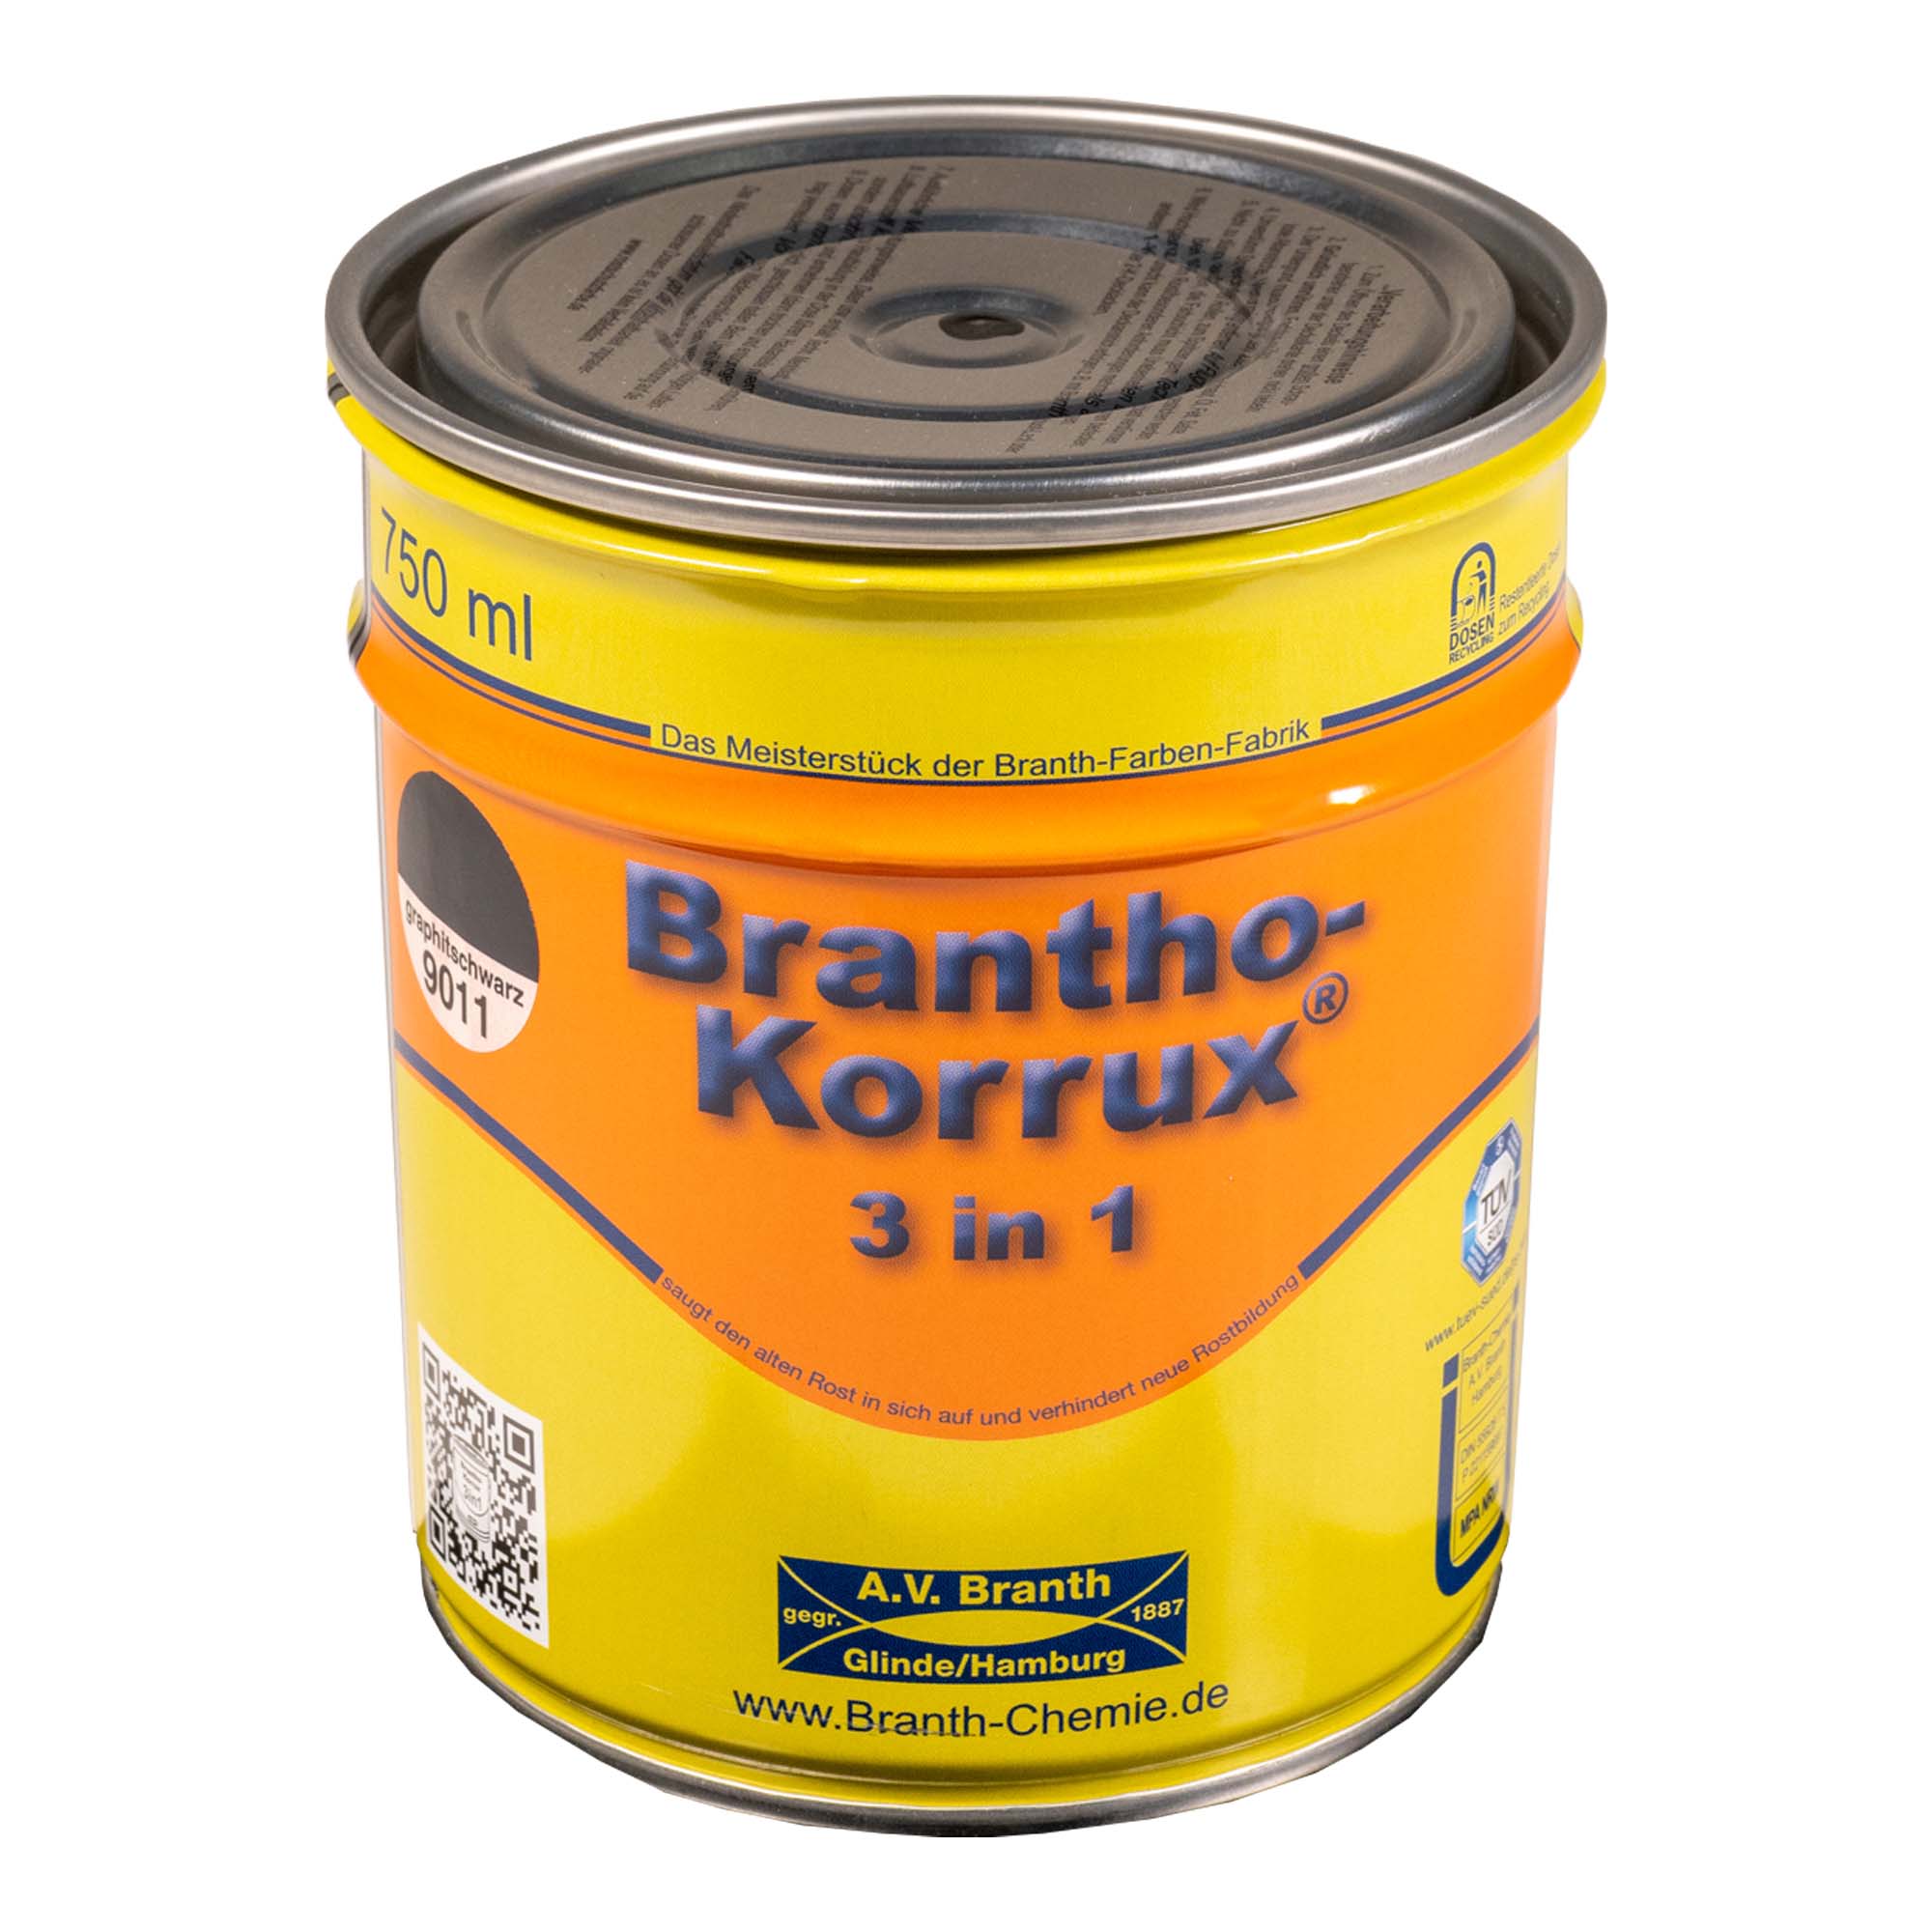 Brantho- Korrux "3 in 1" Metallschutzfarbe RAL 9011 graphitschwarz 0,75 l